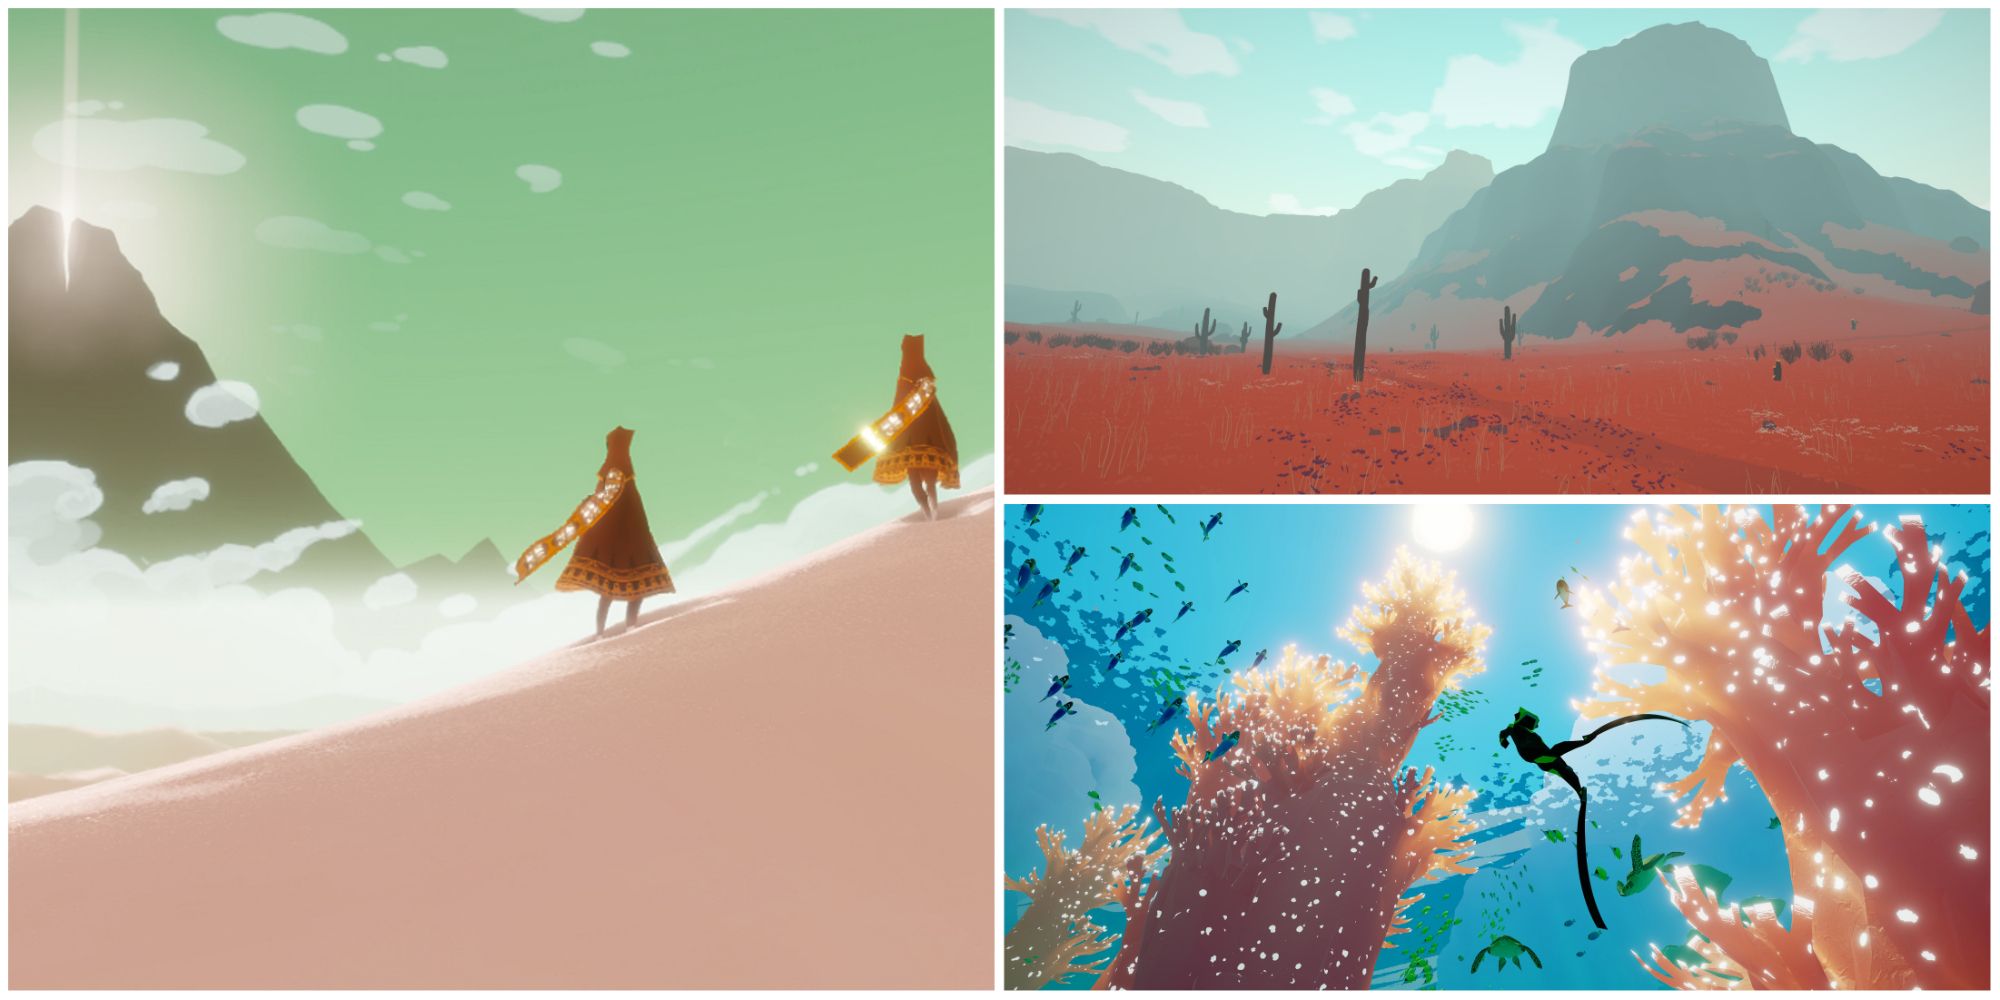 Walking Simulator Games Collage